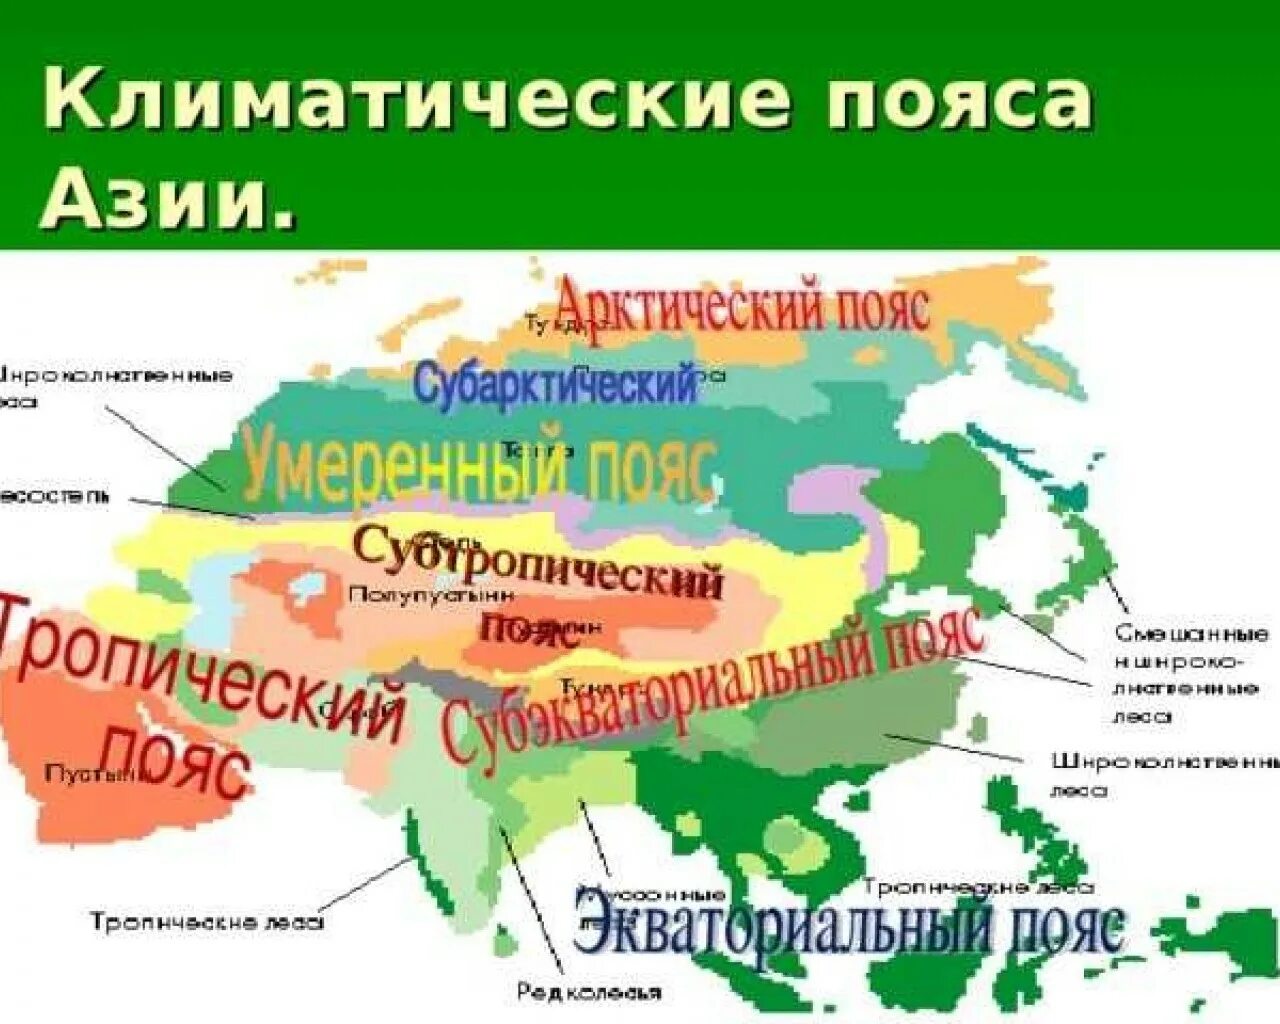 Природно климатические зоны евразии. Центральная Азия карта климатические пояса. Карта климат поясов Евразии. Климатические пояса Юго Восточной Азии. Карта климатических поясов Евразии.